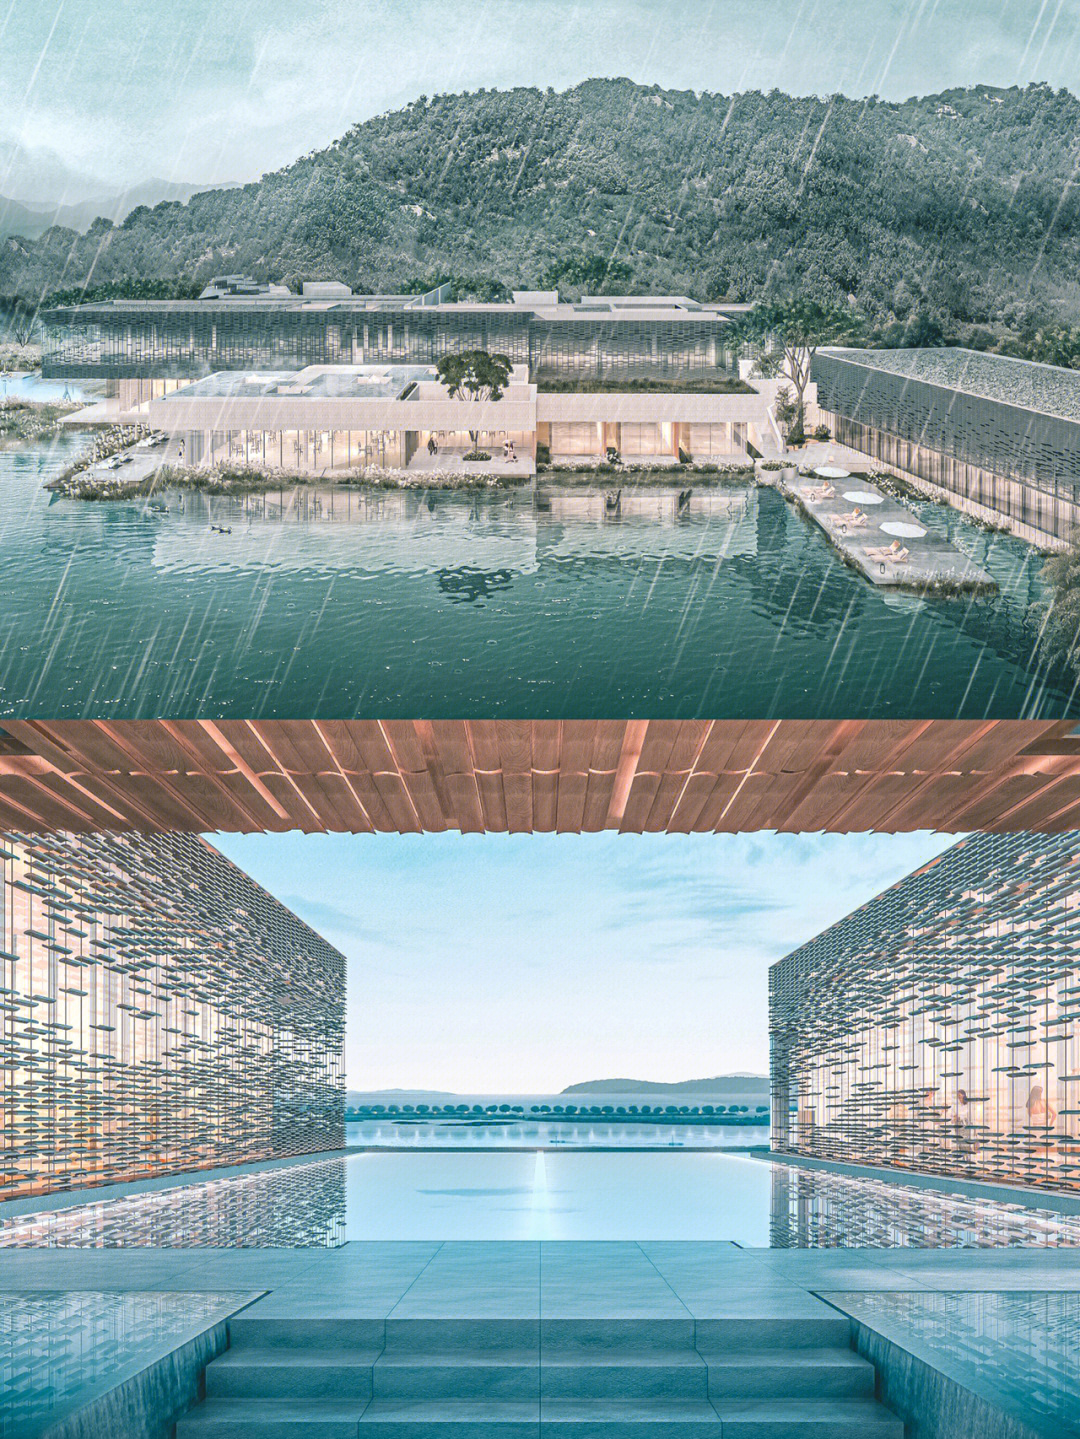 苏州太湖度假区2022图片